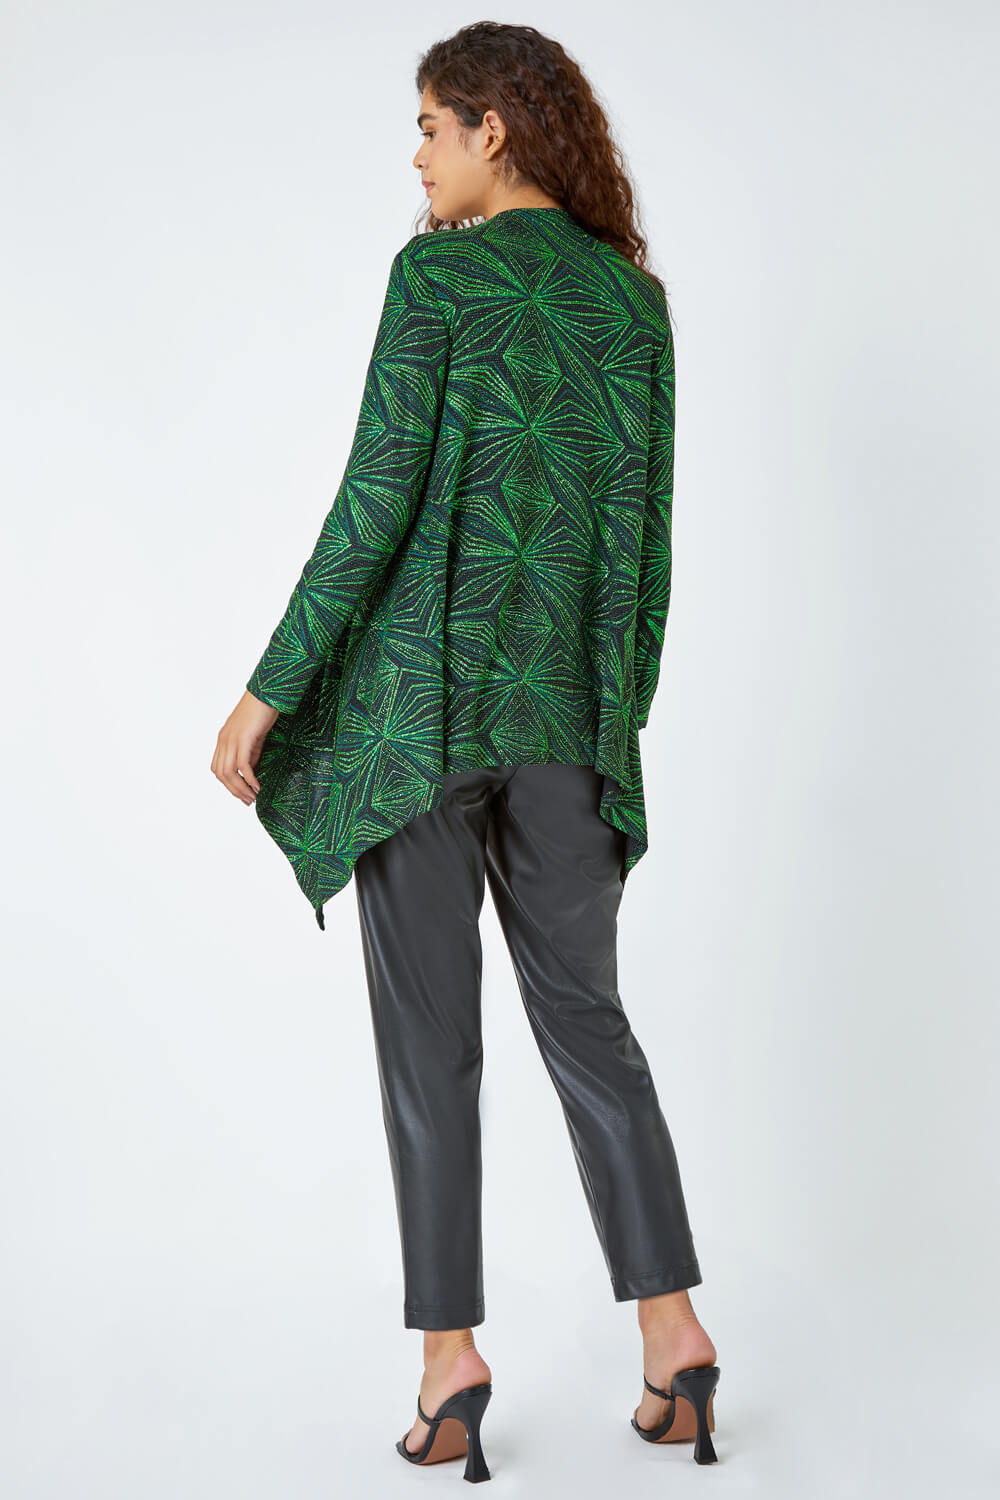 Green Geometric Sparkle Embellished Kimono, Image 3 of 5